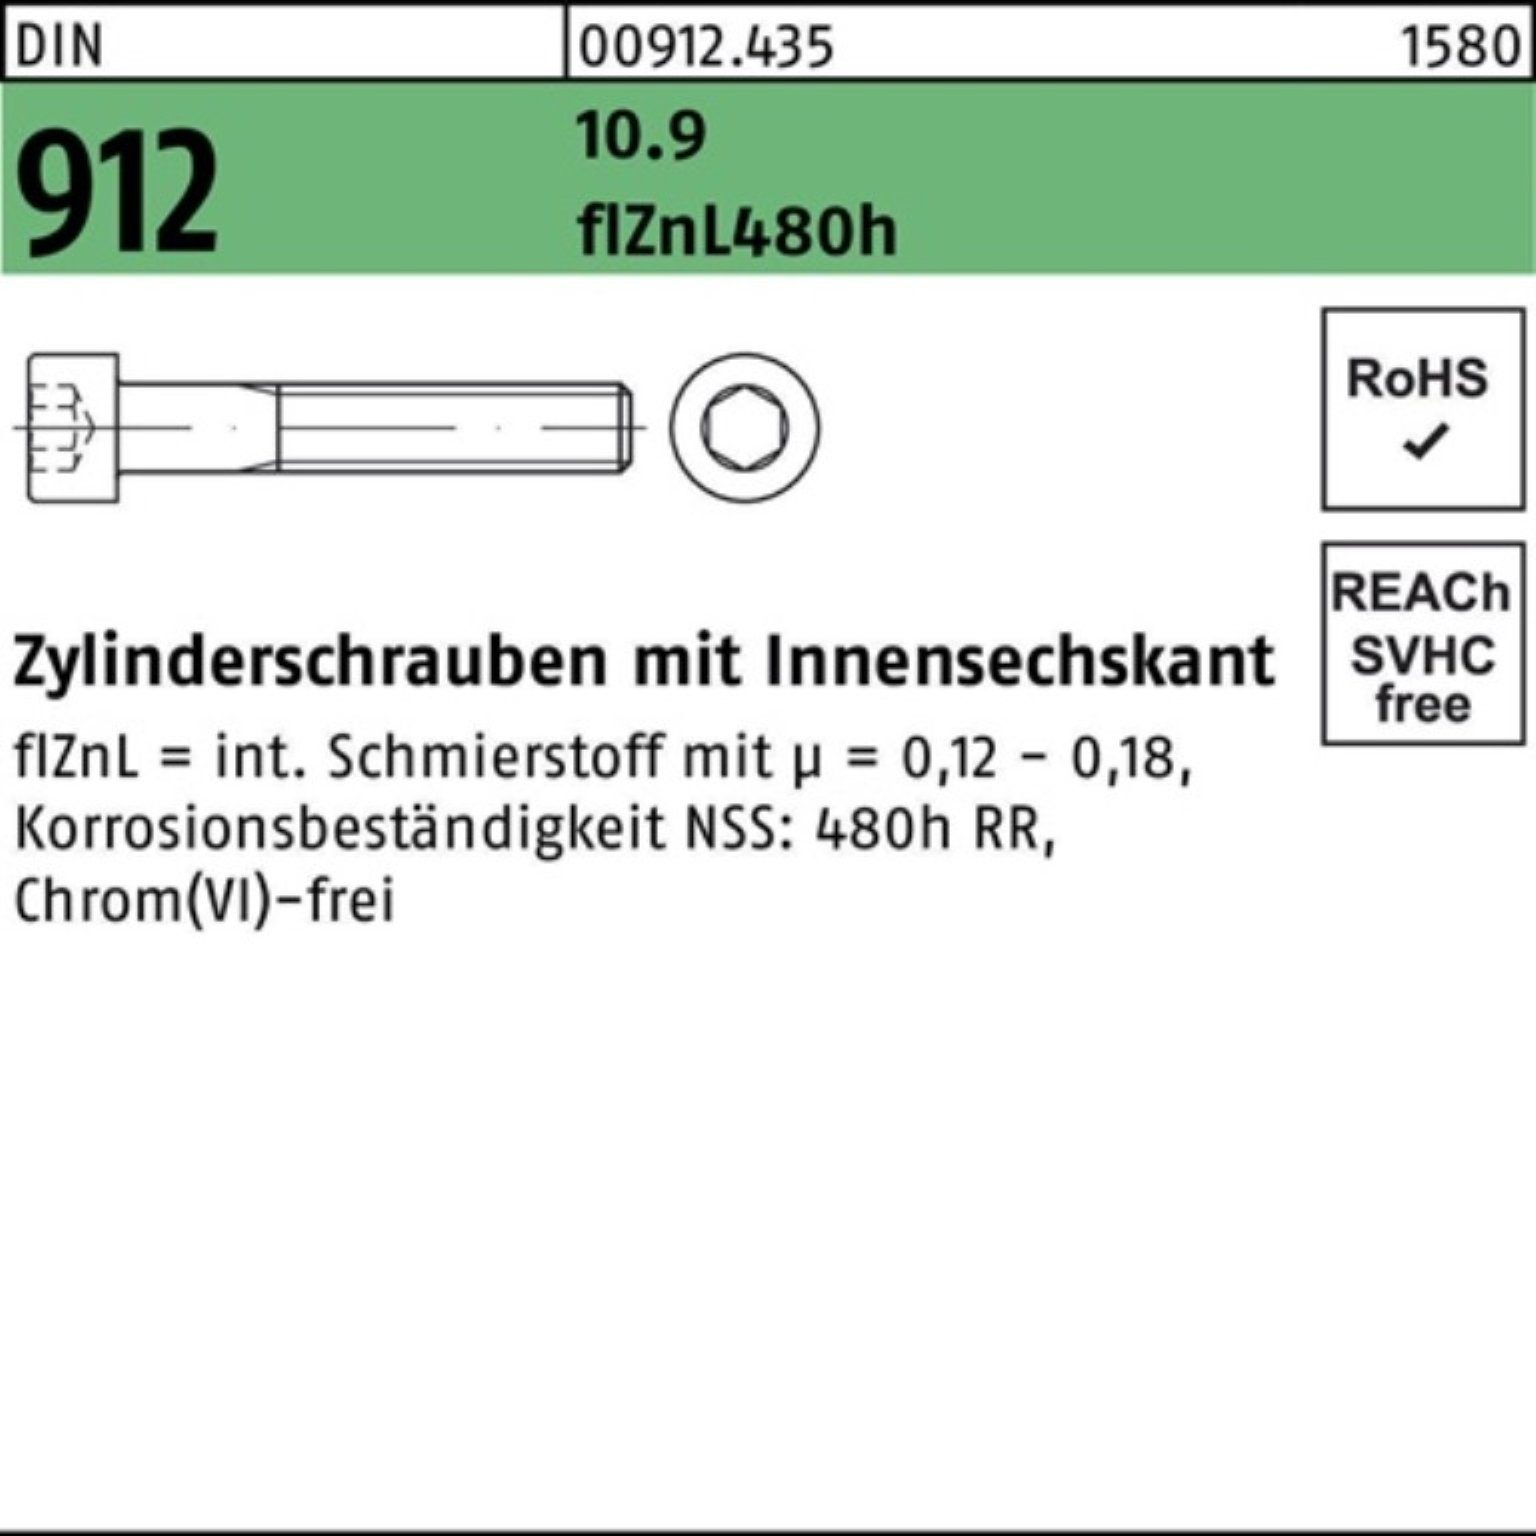 DIN Reyher 10.9 Zylinderschraube Innen-6kt 500er flZnL/nc/x/x Zylinderschraube Pack M6x16 912